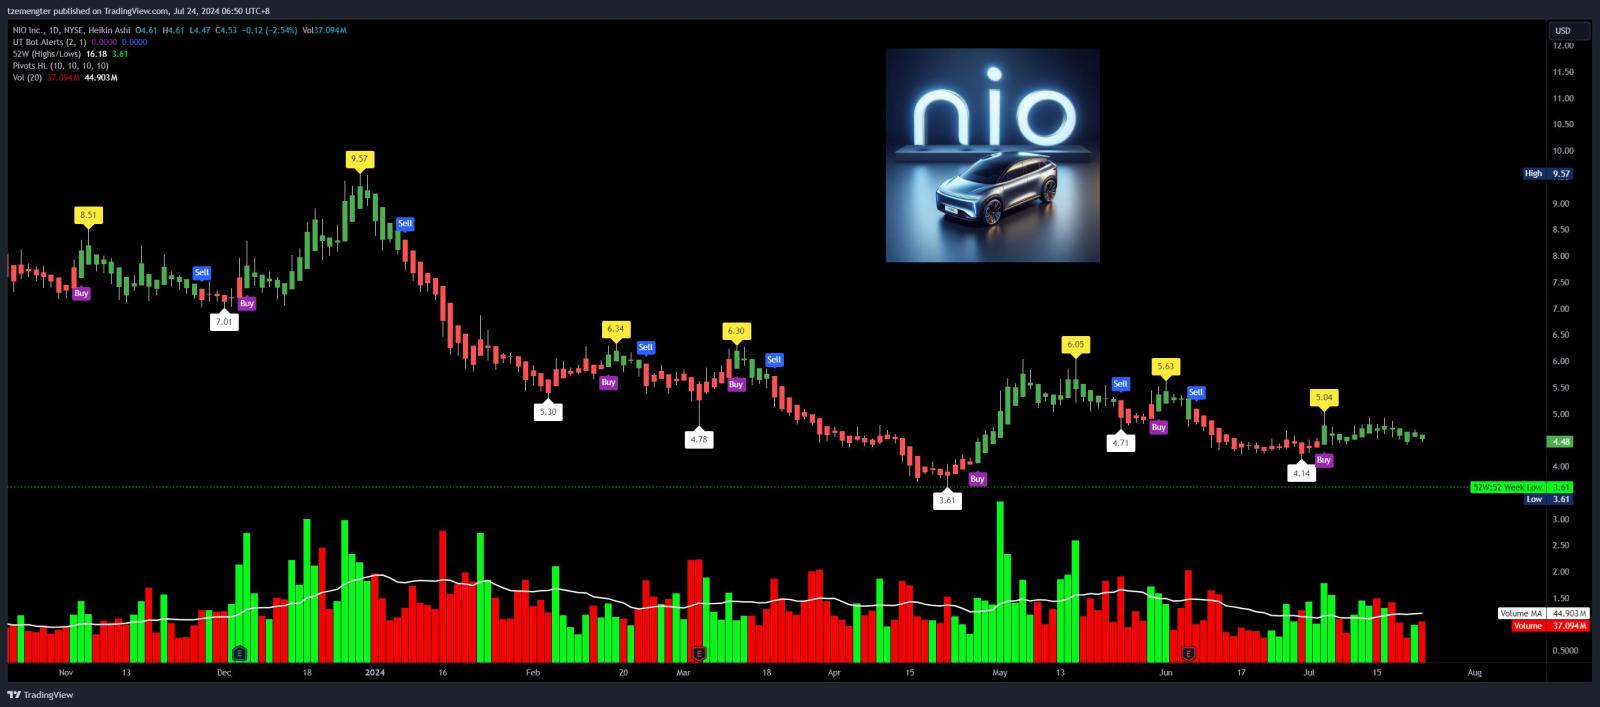 $NIO Inc (NIO.US)$ pretty much stuck in a range at the moment..